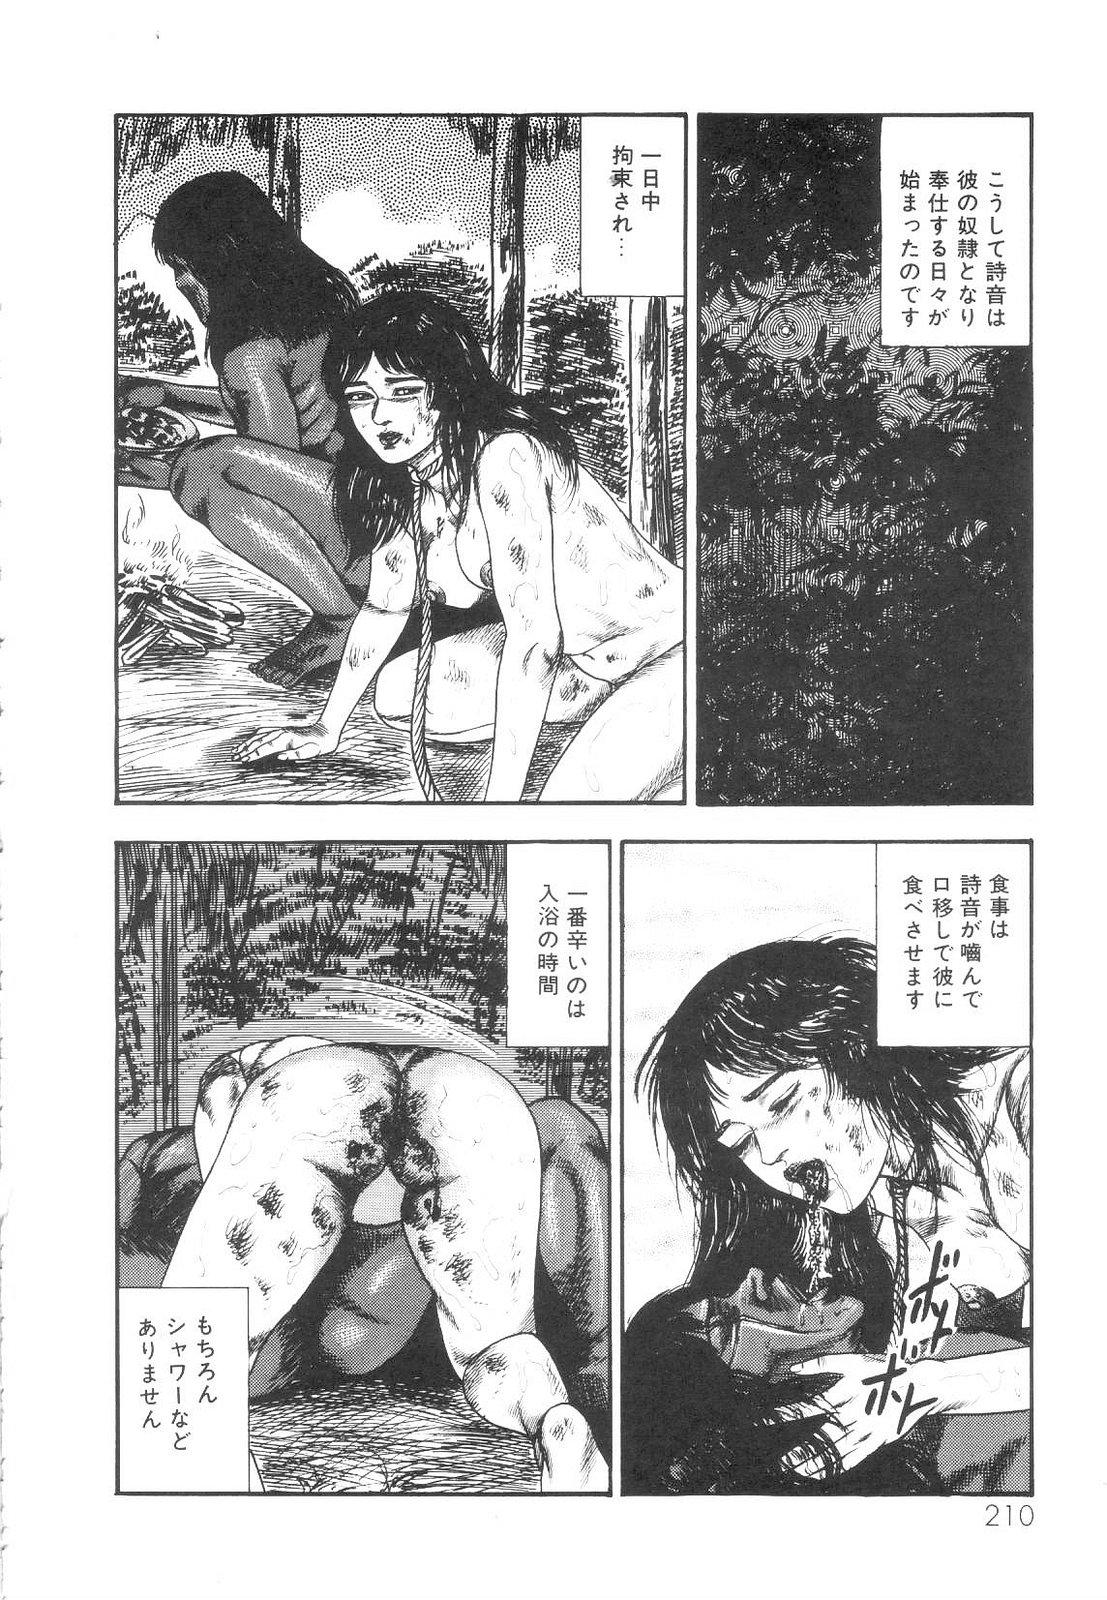 Shiro no Mokushiroku Vol. 1 - Sei Shojo Shion no Shou 210